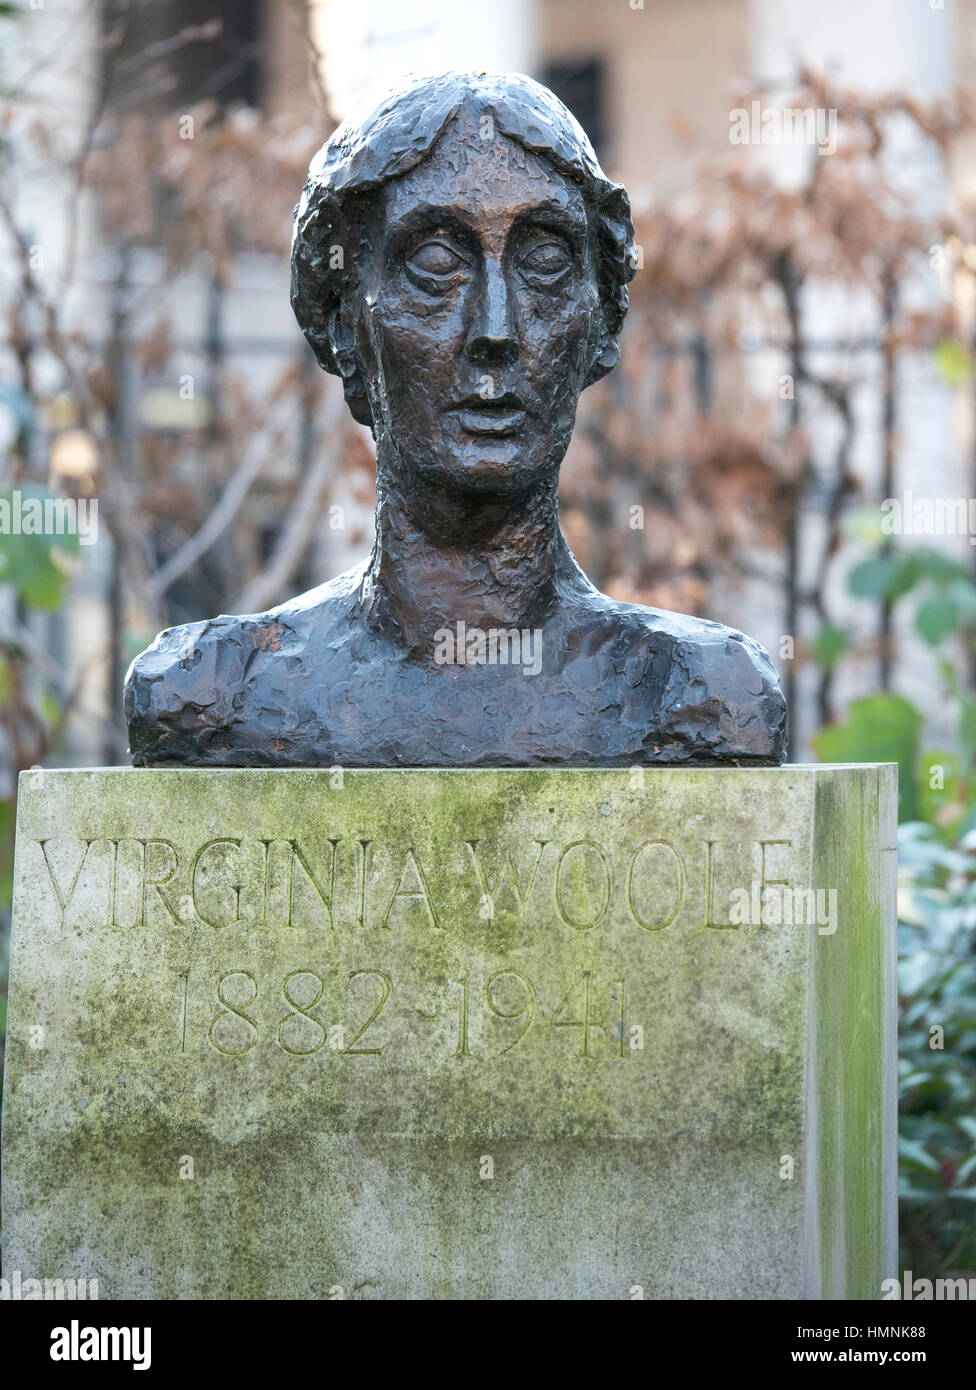 Virginia Woolf Statue en Tavistock Square dans le quartier de Bloomsbury à Londres Banque D'Images